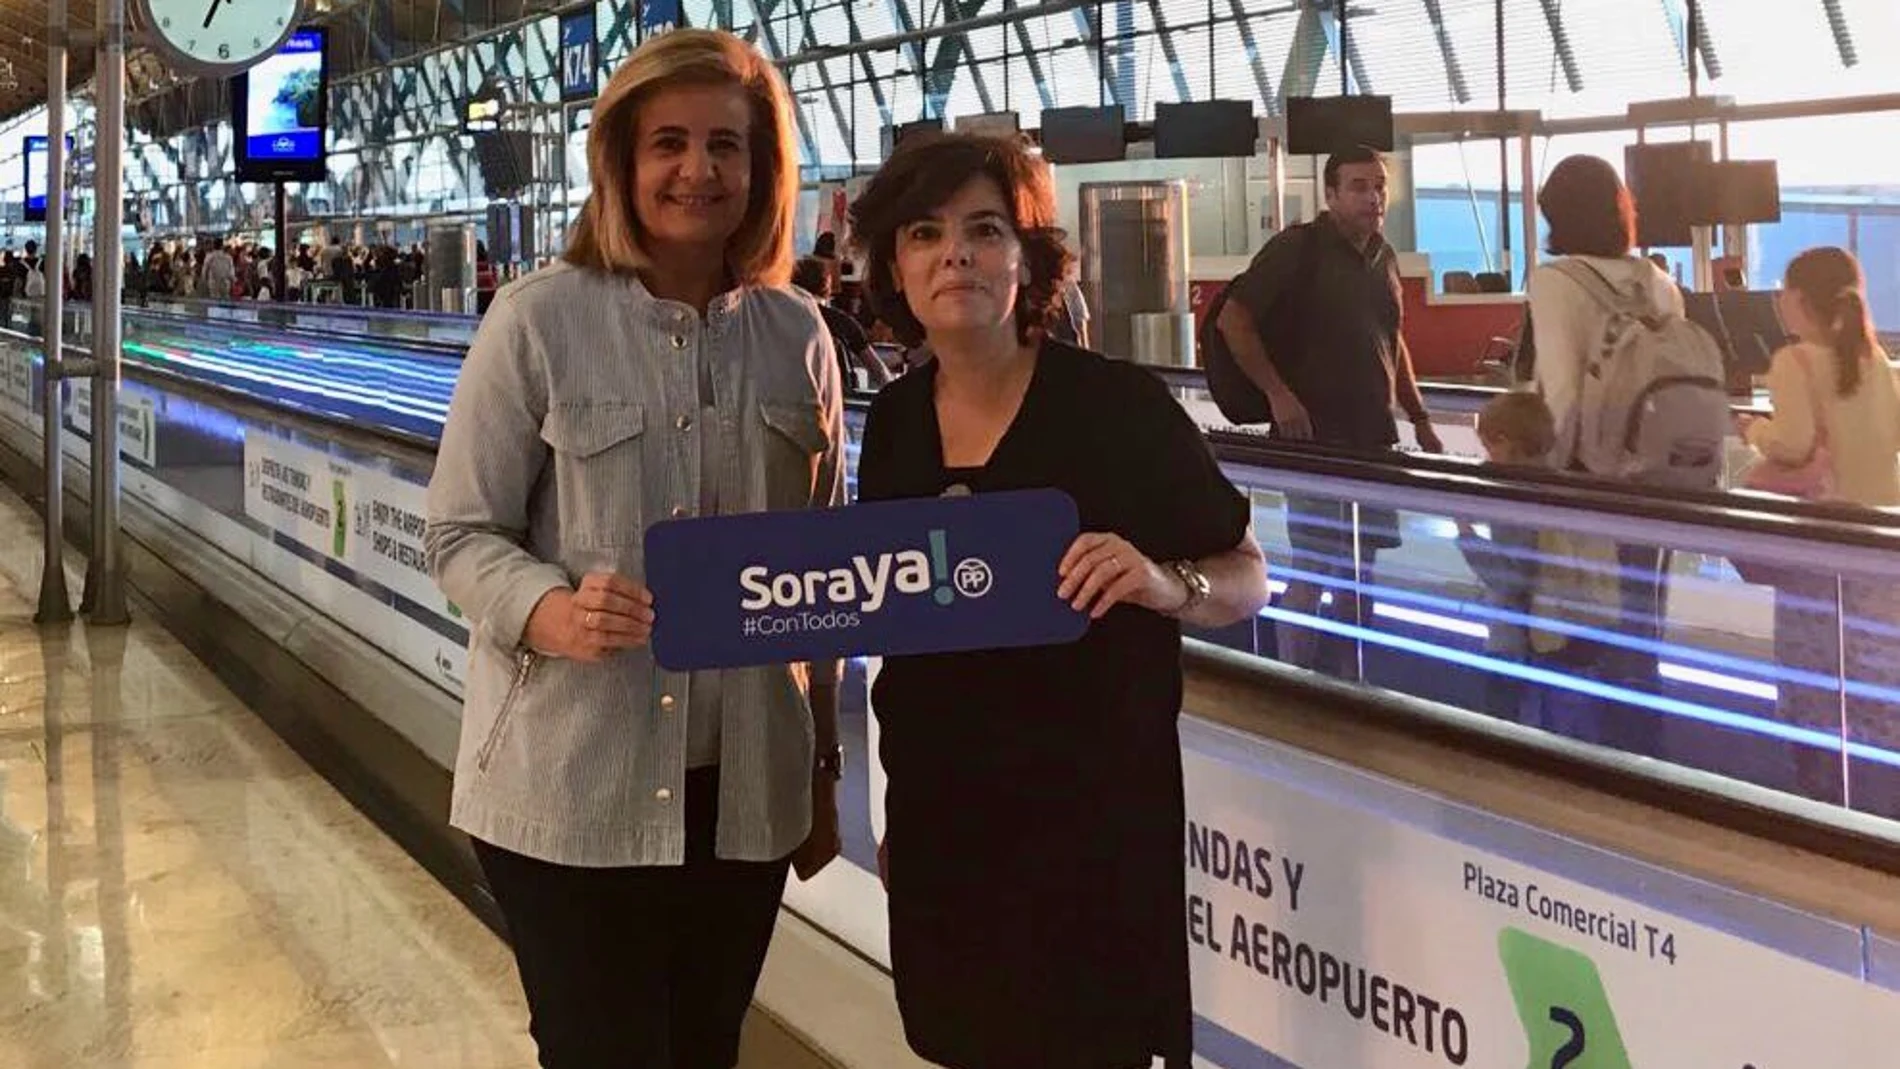 La candidata a presidir el PP, Soraya Sáenz de Santamaría, junto a la ex ministra de Empleo Fátima Báñez